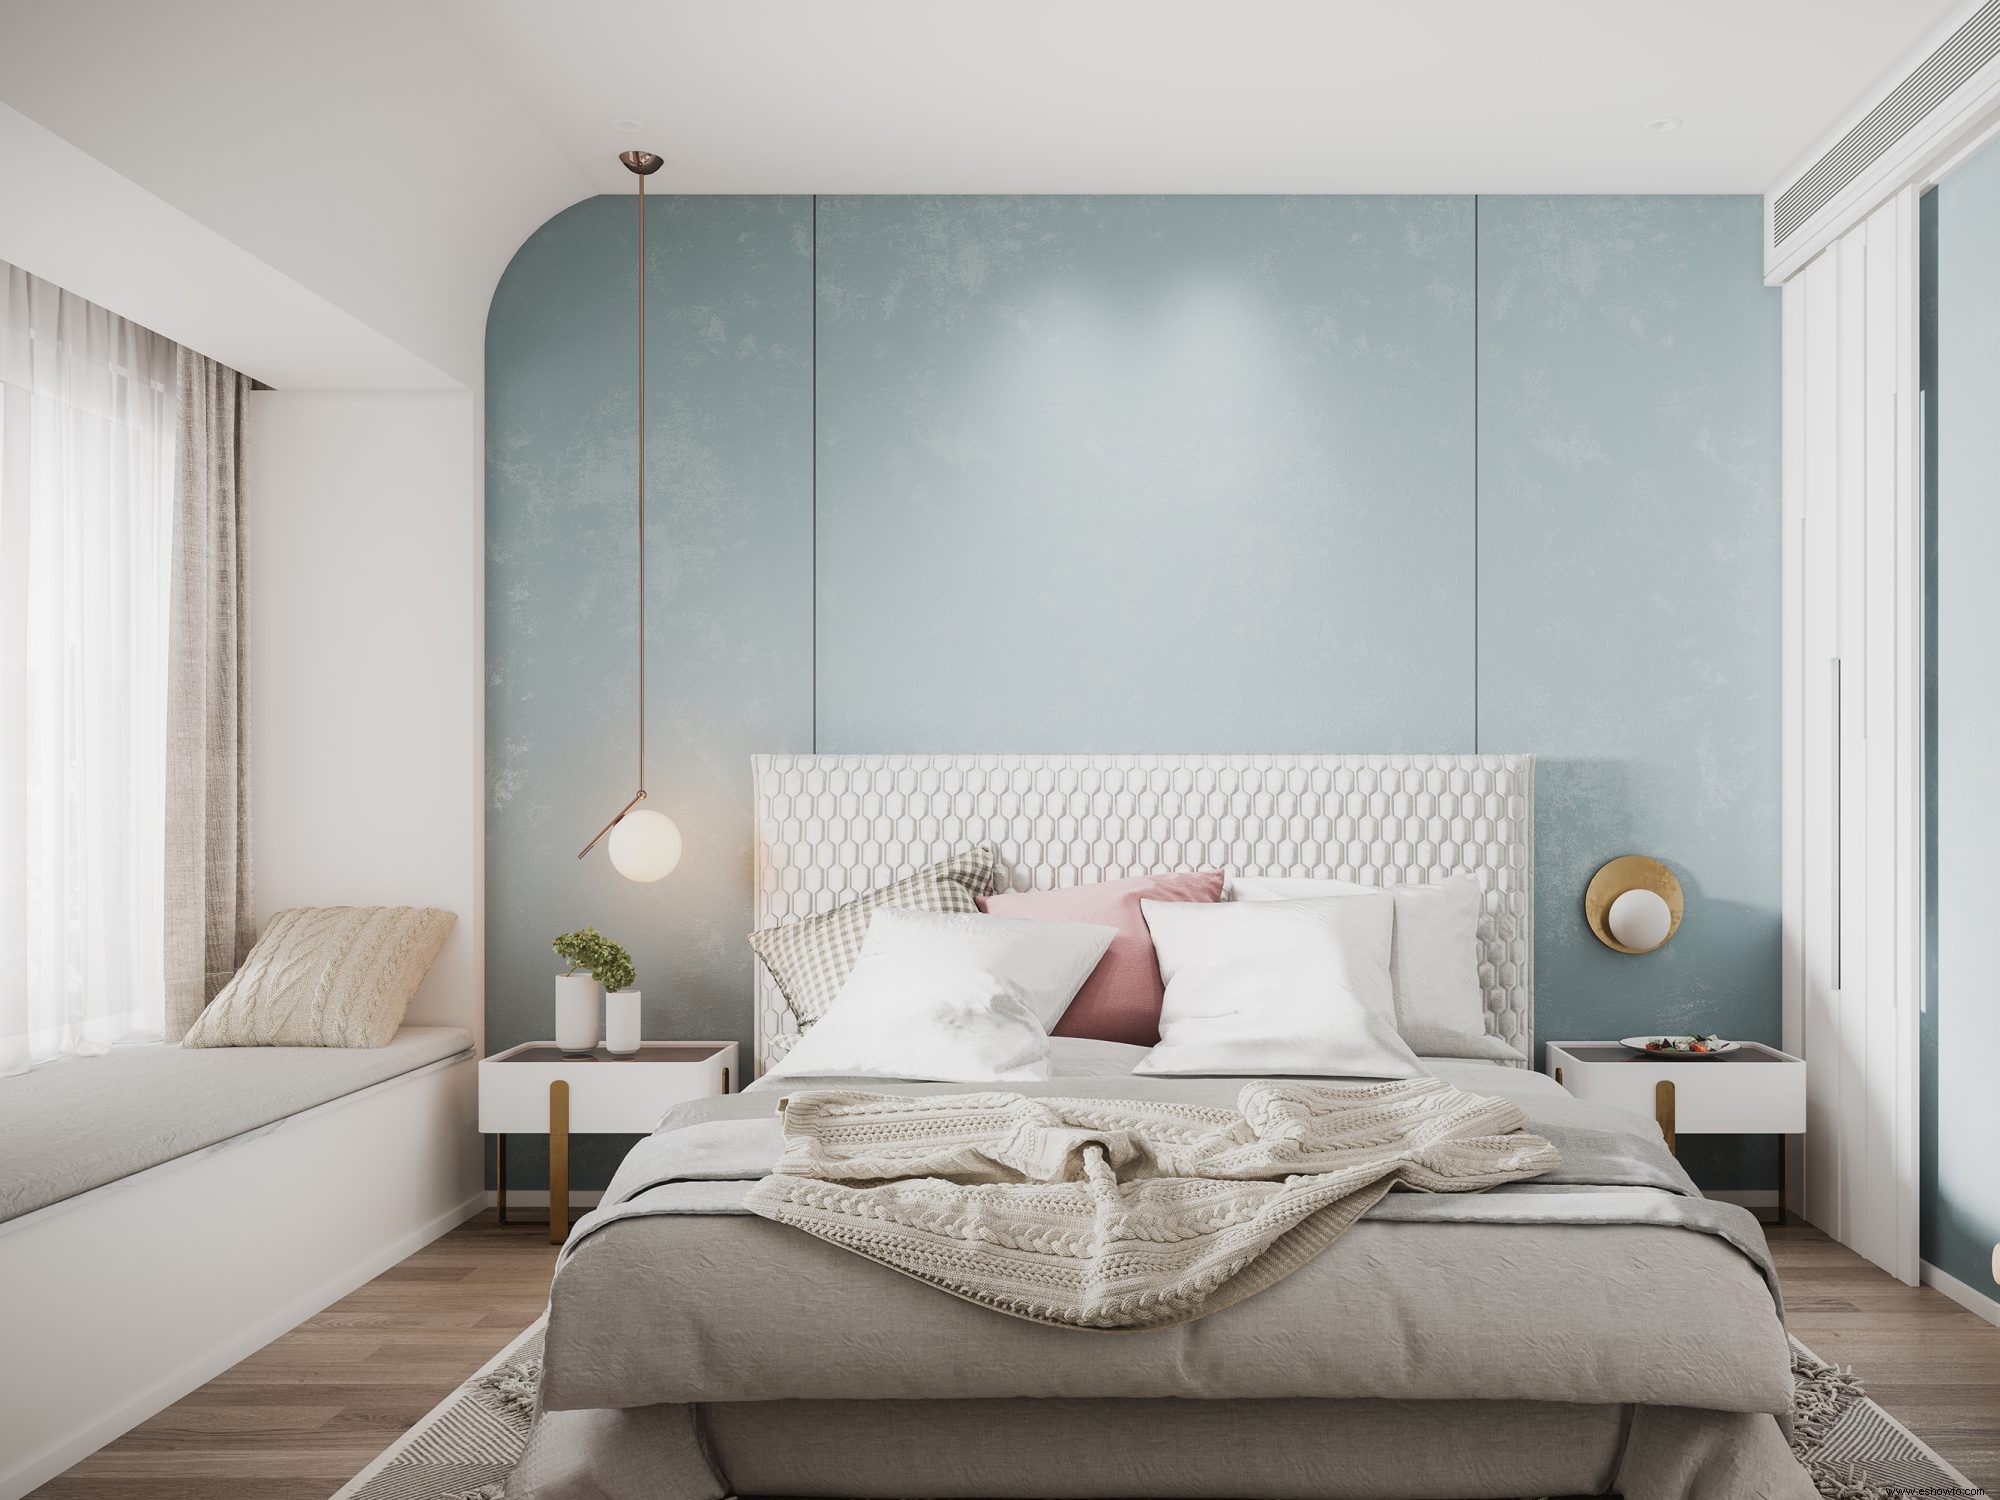 Los 7 mejores colores de pintura para dormitorios, según los expertos en decoración del hogar 